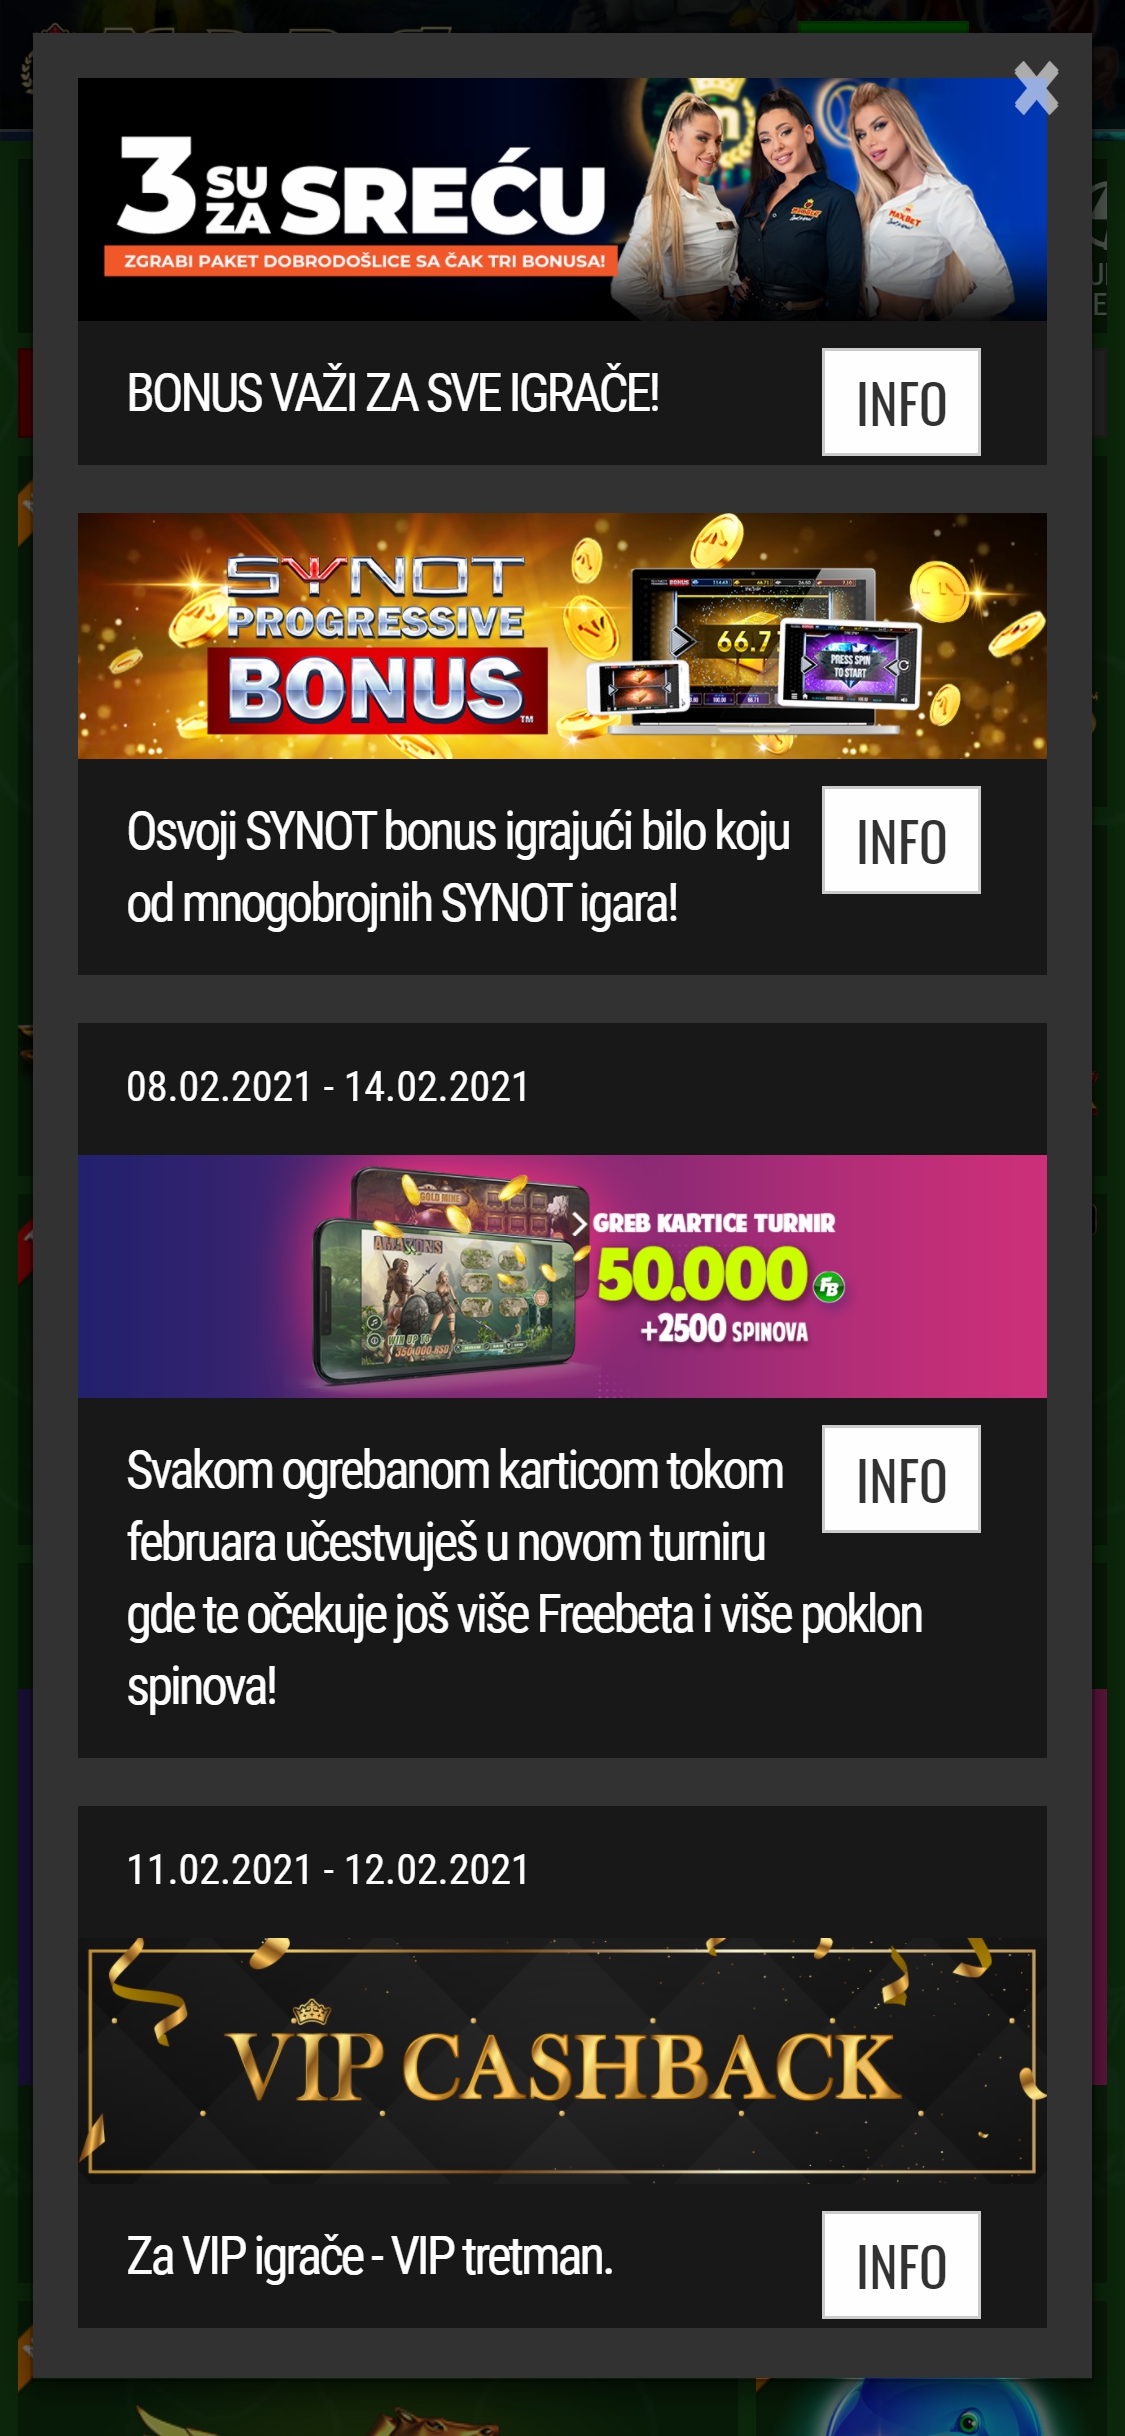 MaxBet Casino Mobile No Deposit Bonus Review